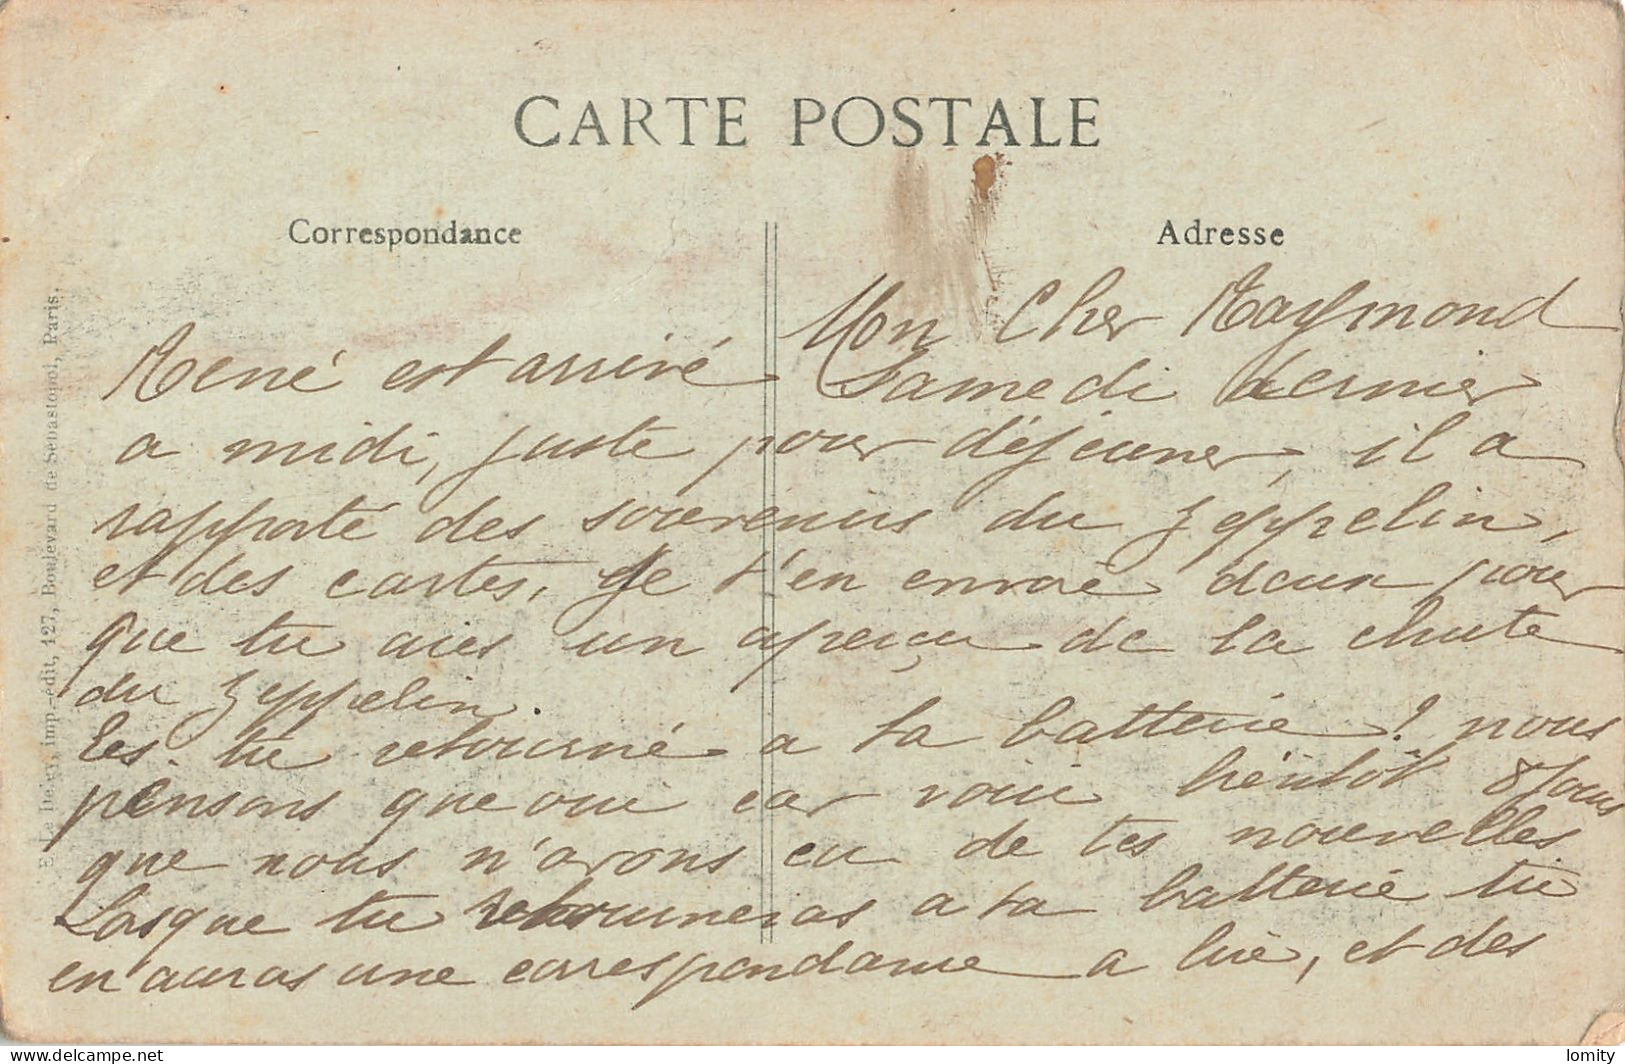 Destockage lot de 48 cartes postales CPA de l' Oise Chantilly Pont Sainte Maxence Beauvais Creil Noyon Compiegne Boran